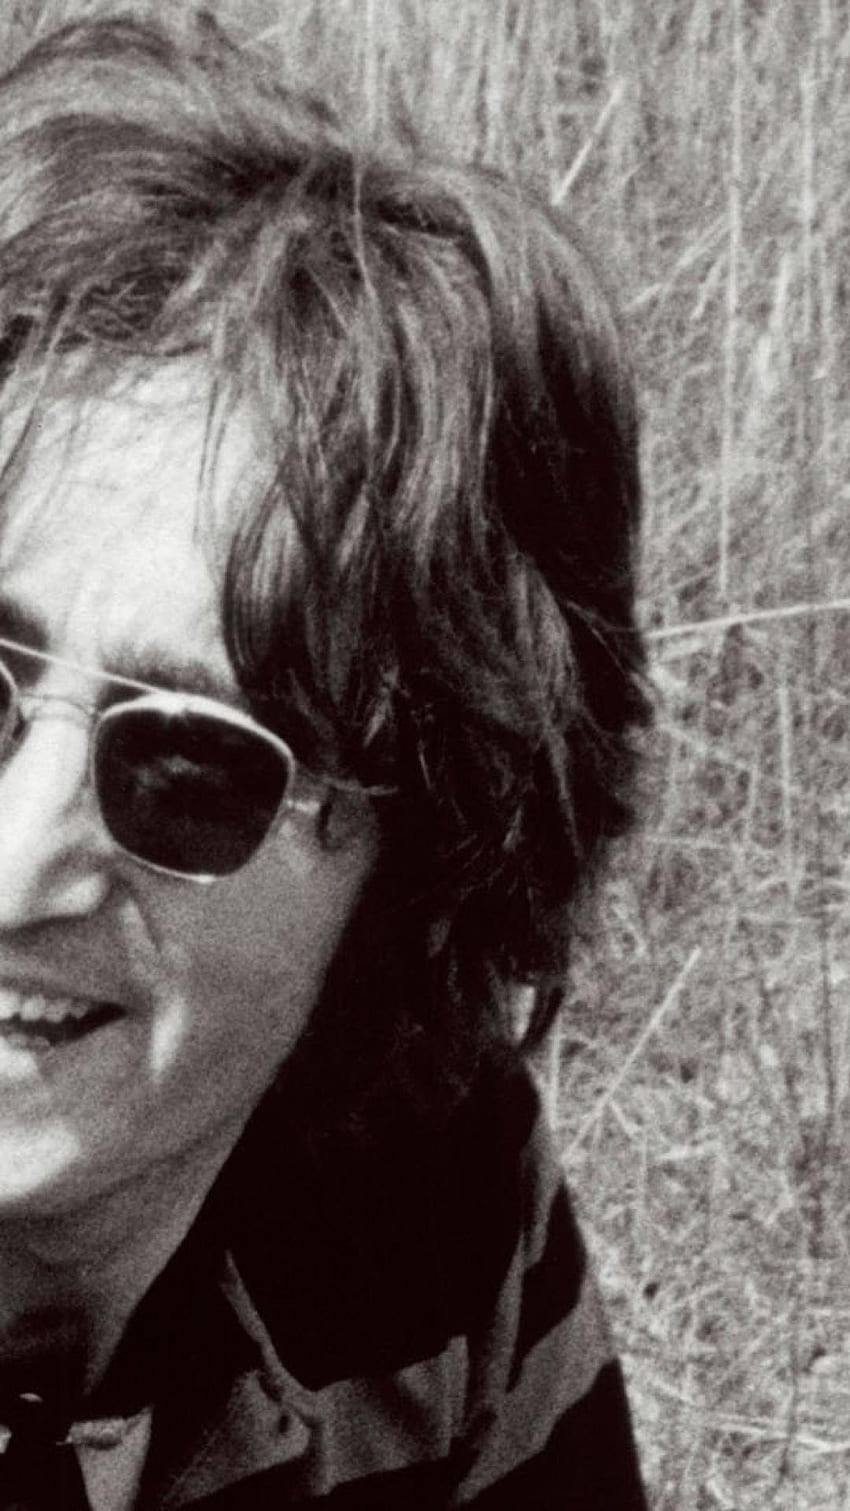 Of John Lennon - - - Tip, John Lennon iPhone HD phone wallpaper